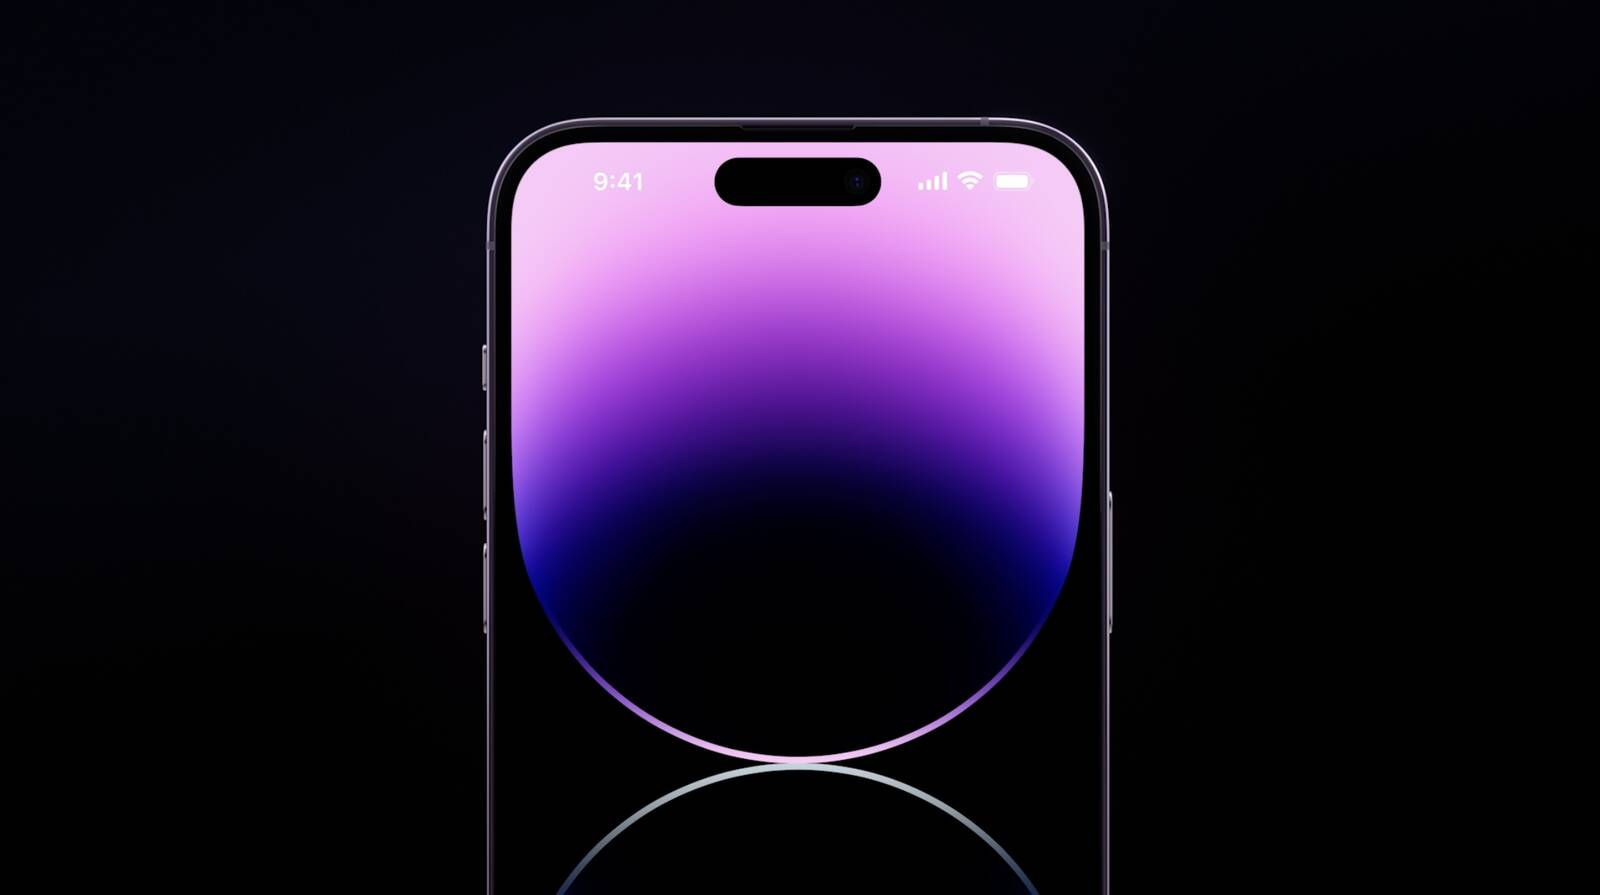 iPhone 14 Promax - một sự lựa chọn tuyệt vời cho những ai yêu thích trải nghiệm công nghệ đỉnh cao. Thiết kế sang trọng, hiệu năng cực cao cùng những tính năng nổi bật sẽ khiến bạn mê mẩn ngay từ cái nhìn đầu tiên. Hãy xem ngay hình ảnh liên quan đến sản phẩm này.